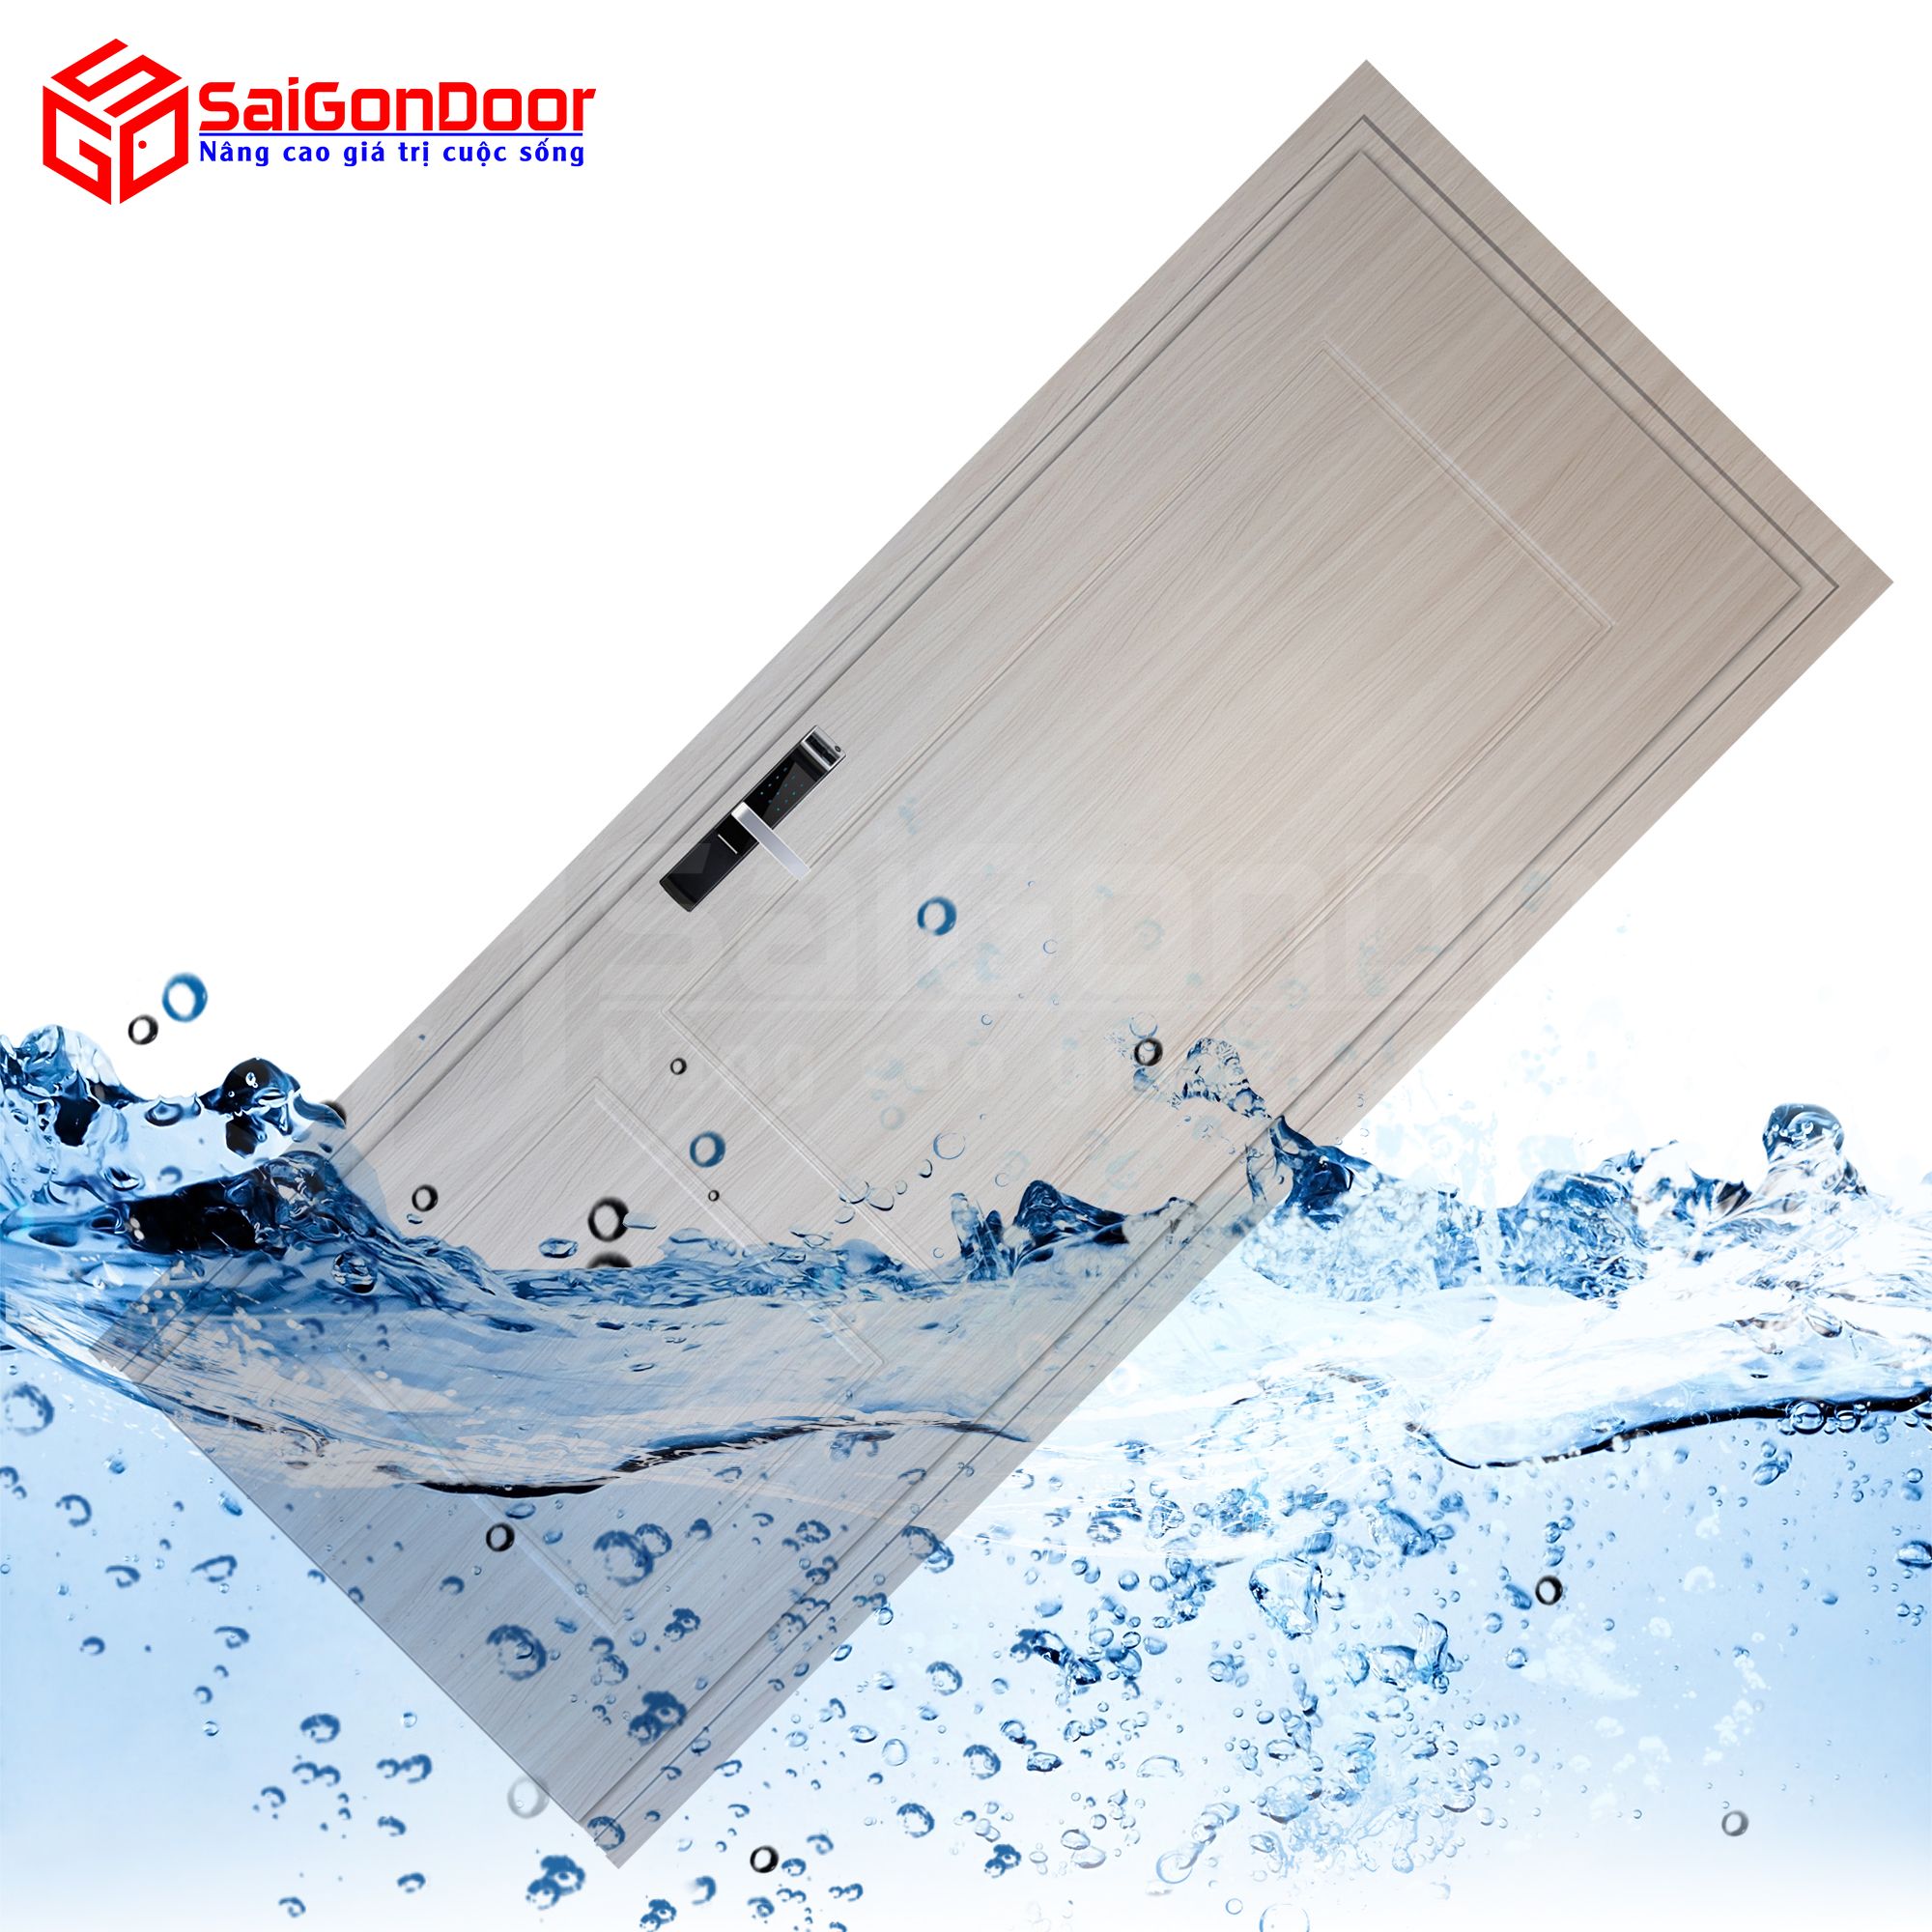 Cửa gỗ nhựa Composite là loại cửa gỗ chịu nước thích hợp dùng làm cửa nhà vệ sinh, cửa phòng giúp đồng nhất trong tổng quan thiết kế căn nhà